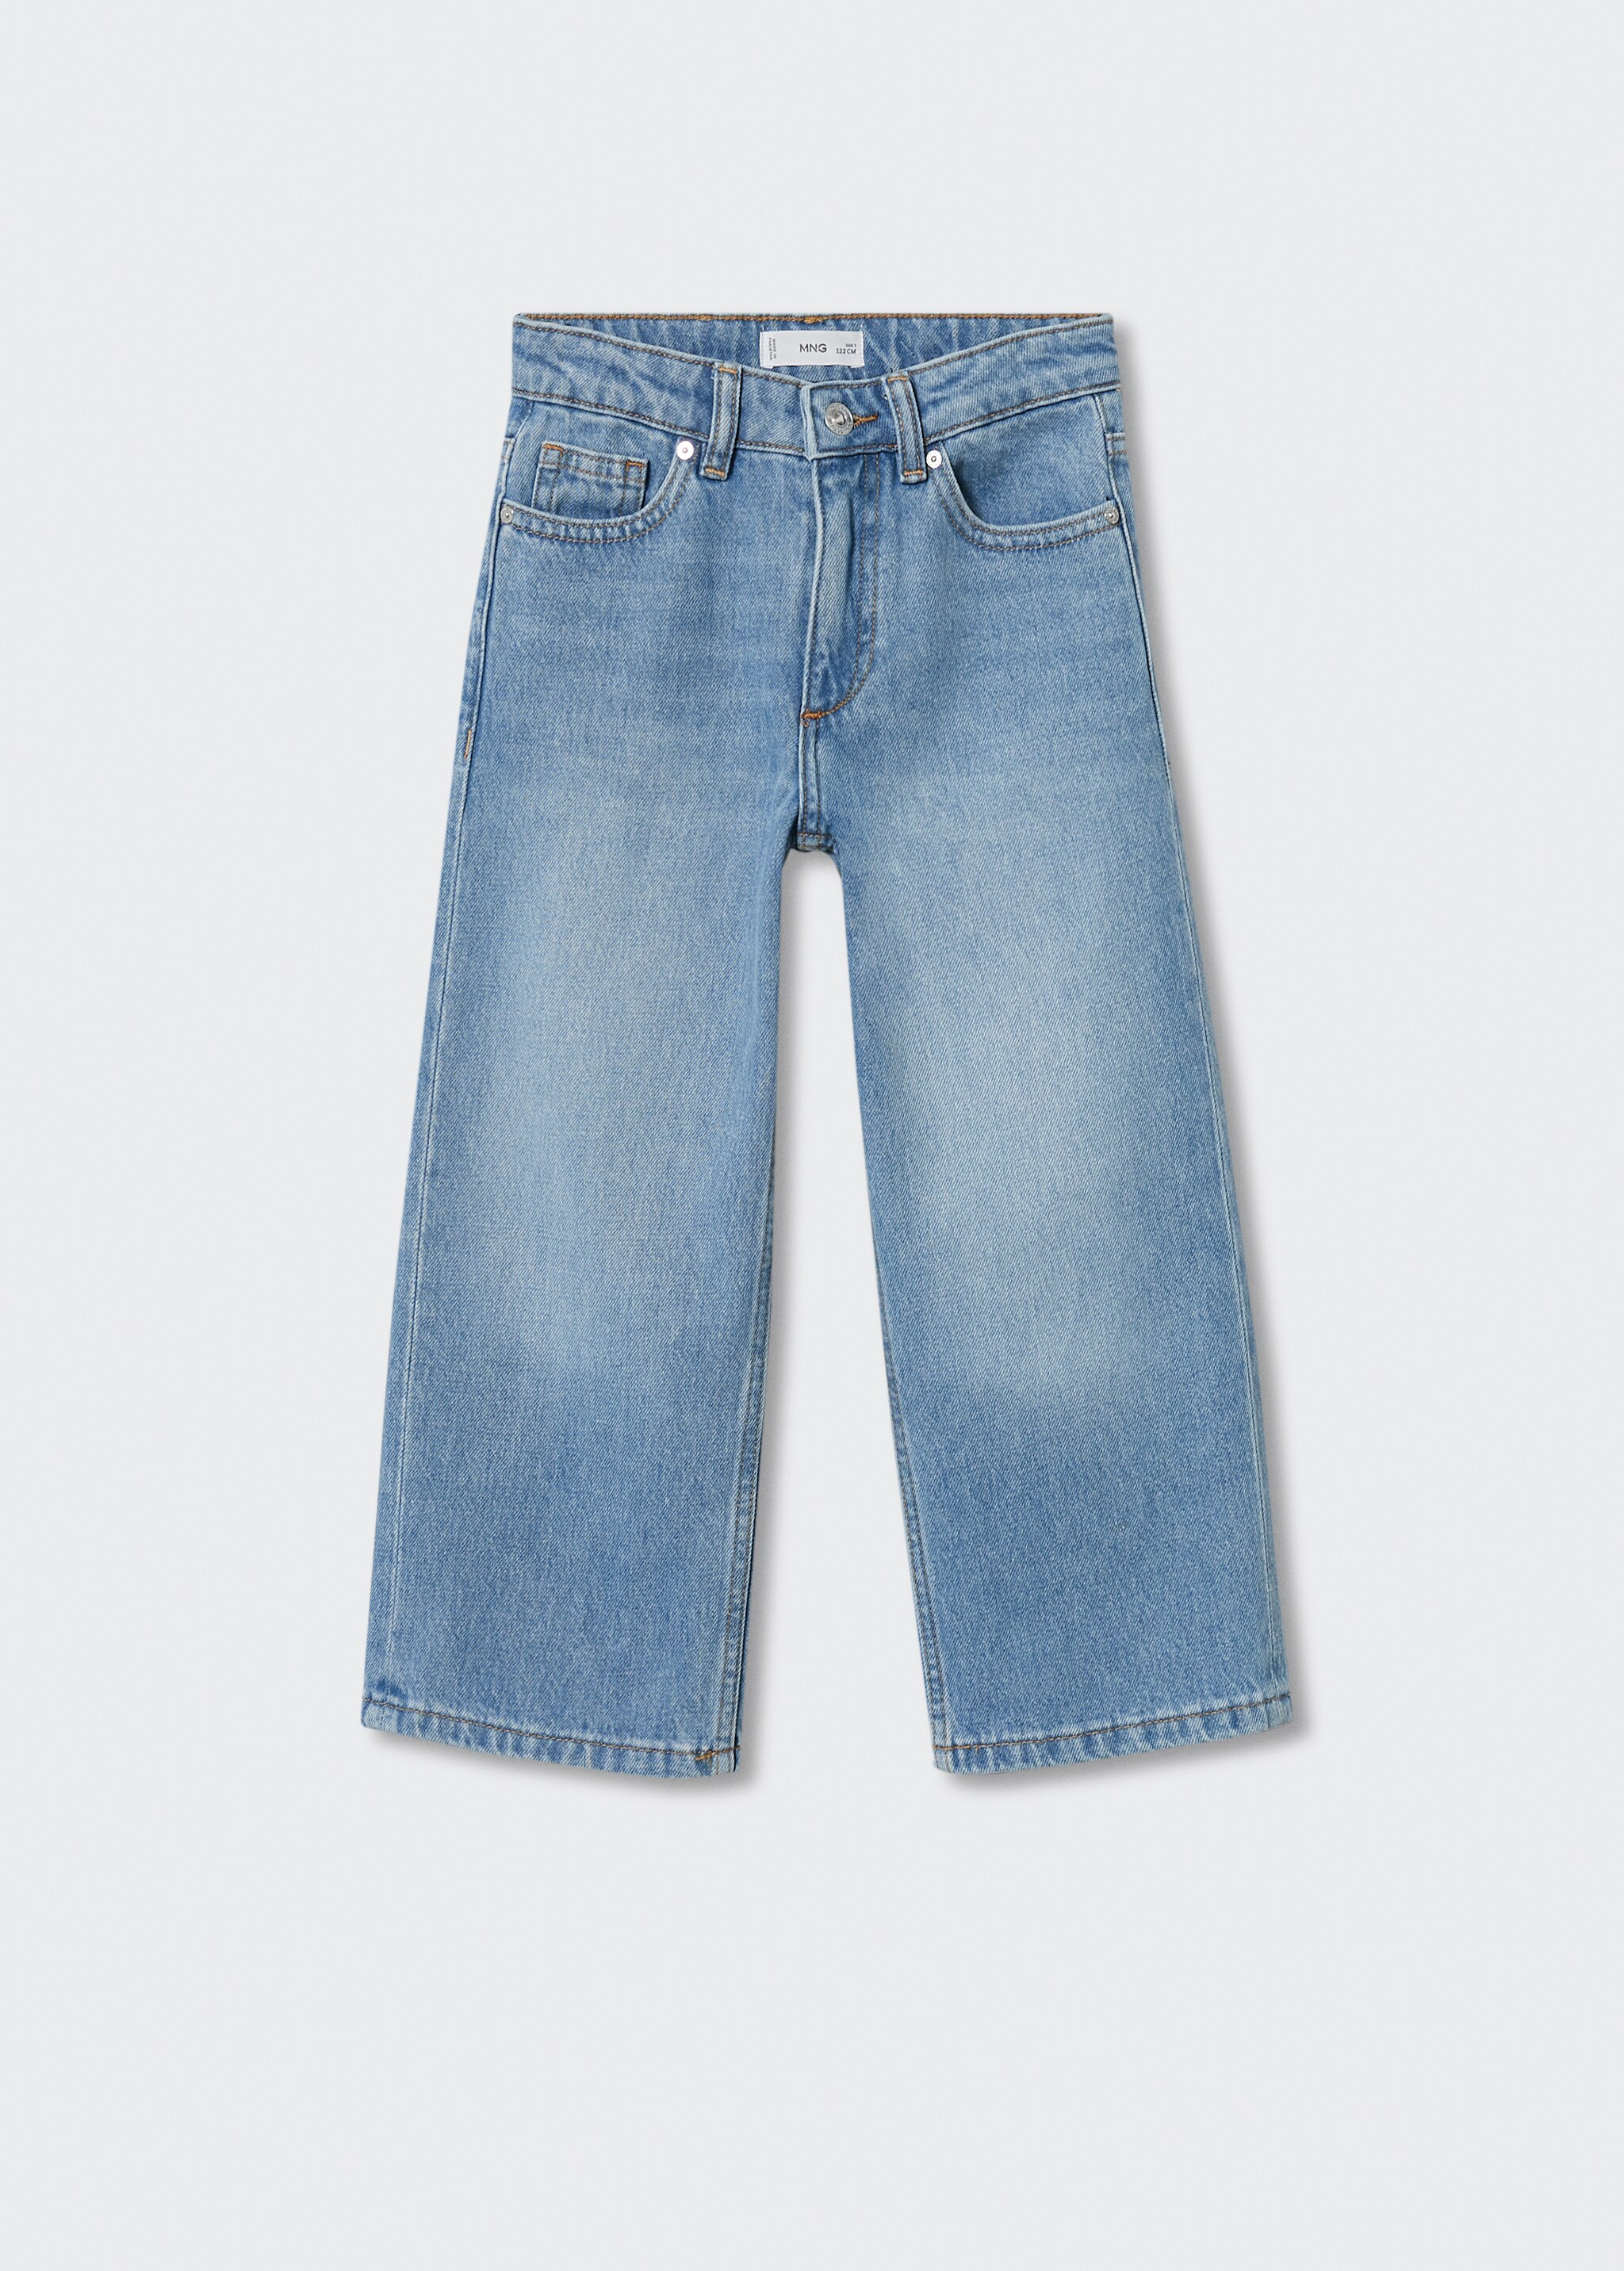 Culotte-jeans - Artikkel uten modell